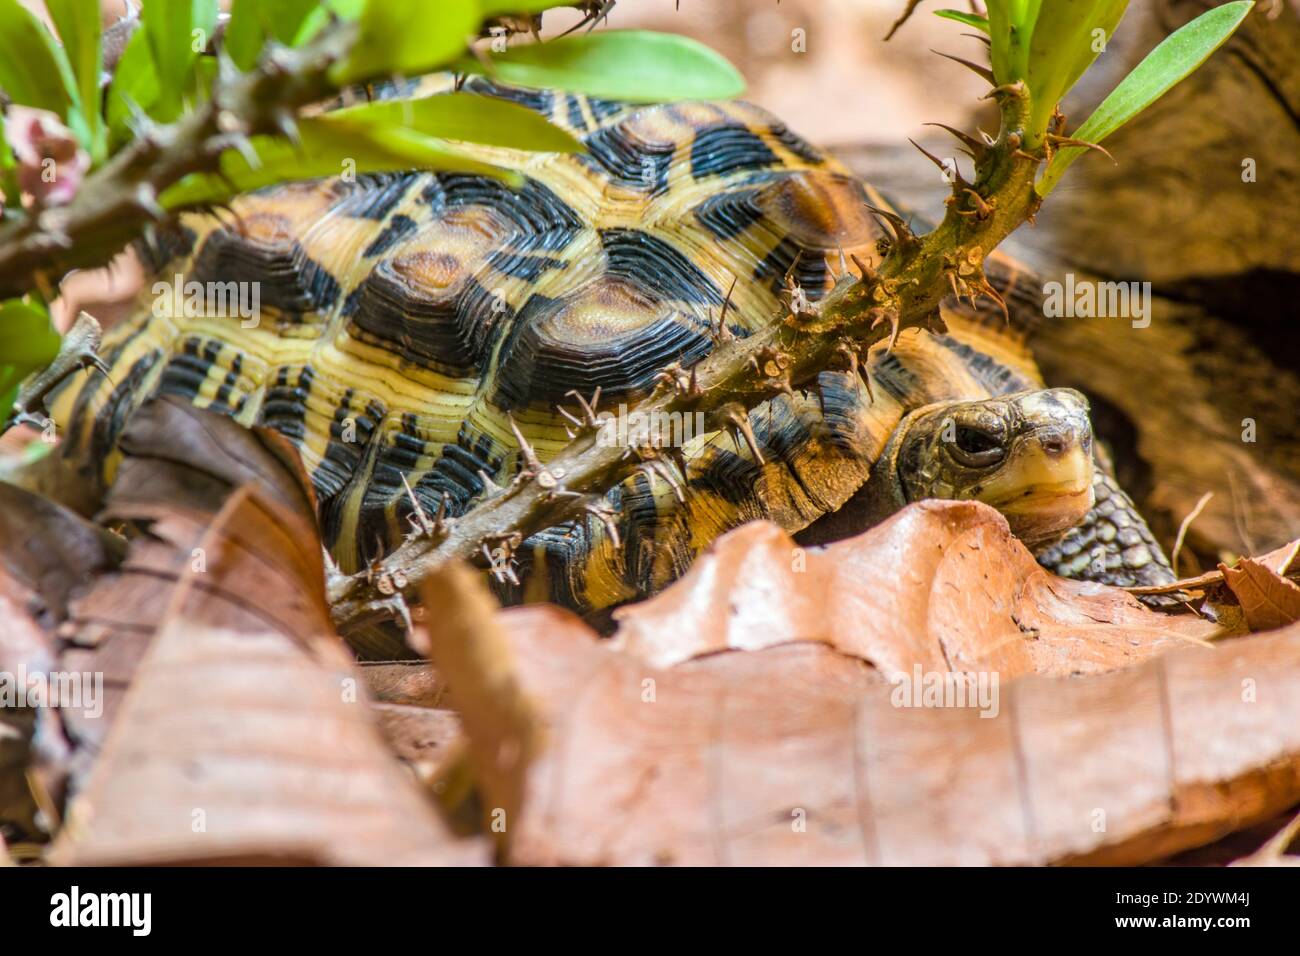 La tortue araignée à dos plat (Pyxis planicauda) est une tortue appartenant à la famille des Testudinidae. Elle est endémique de la côte ouest de Madagascar Banque D'Images